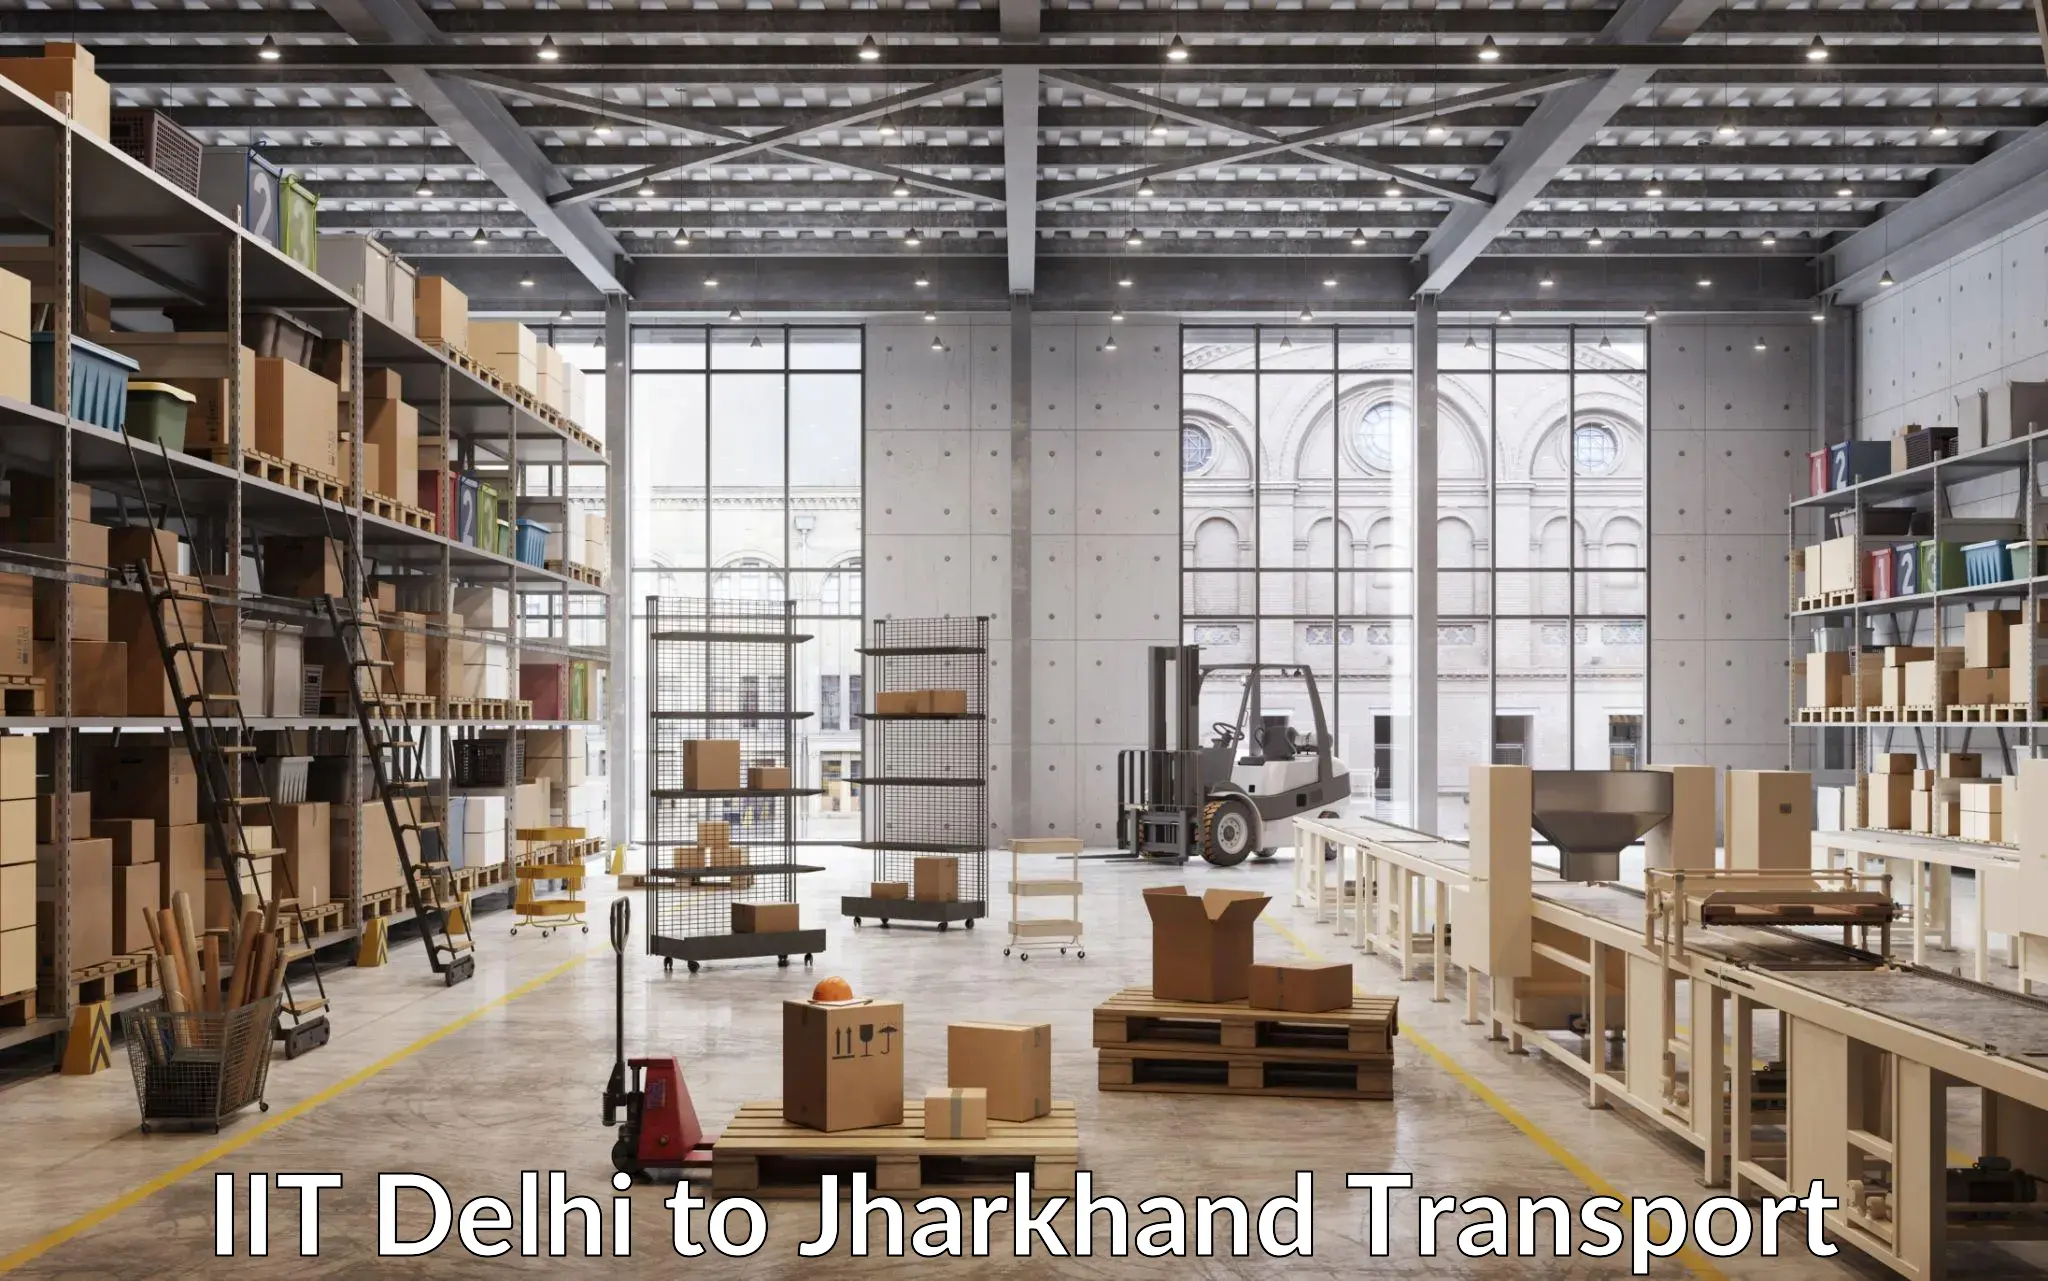 Container transport service IIT Delhi to Dhalbhumgarh